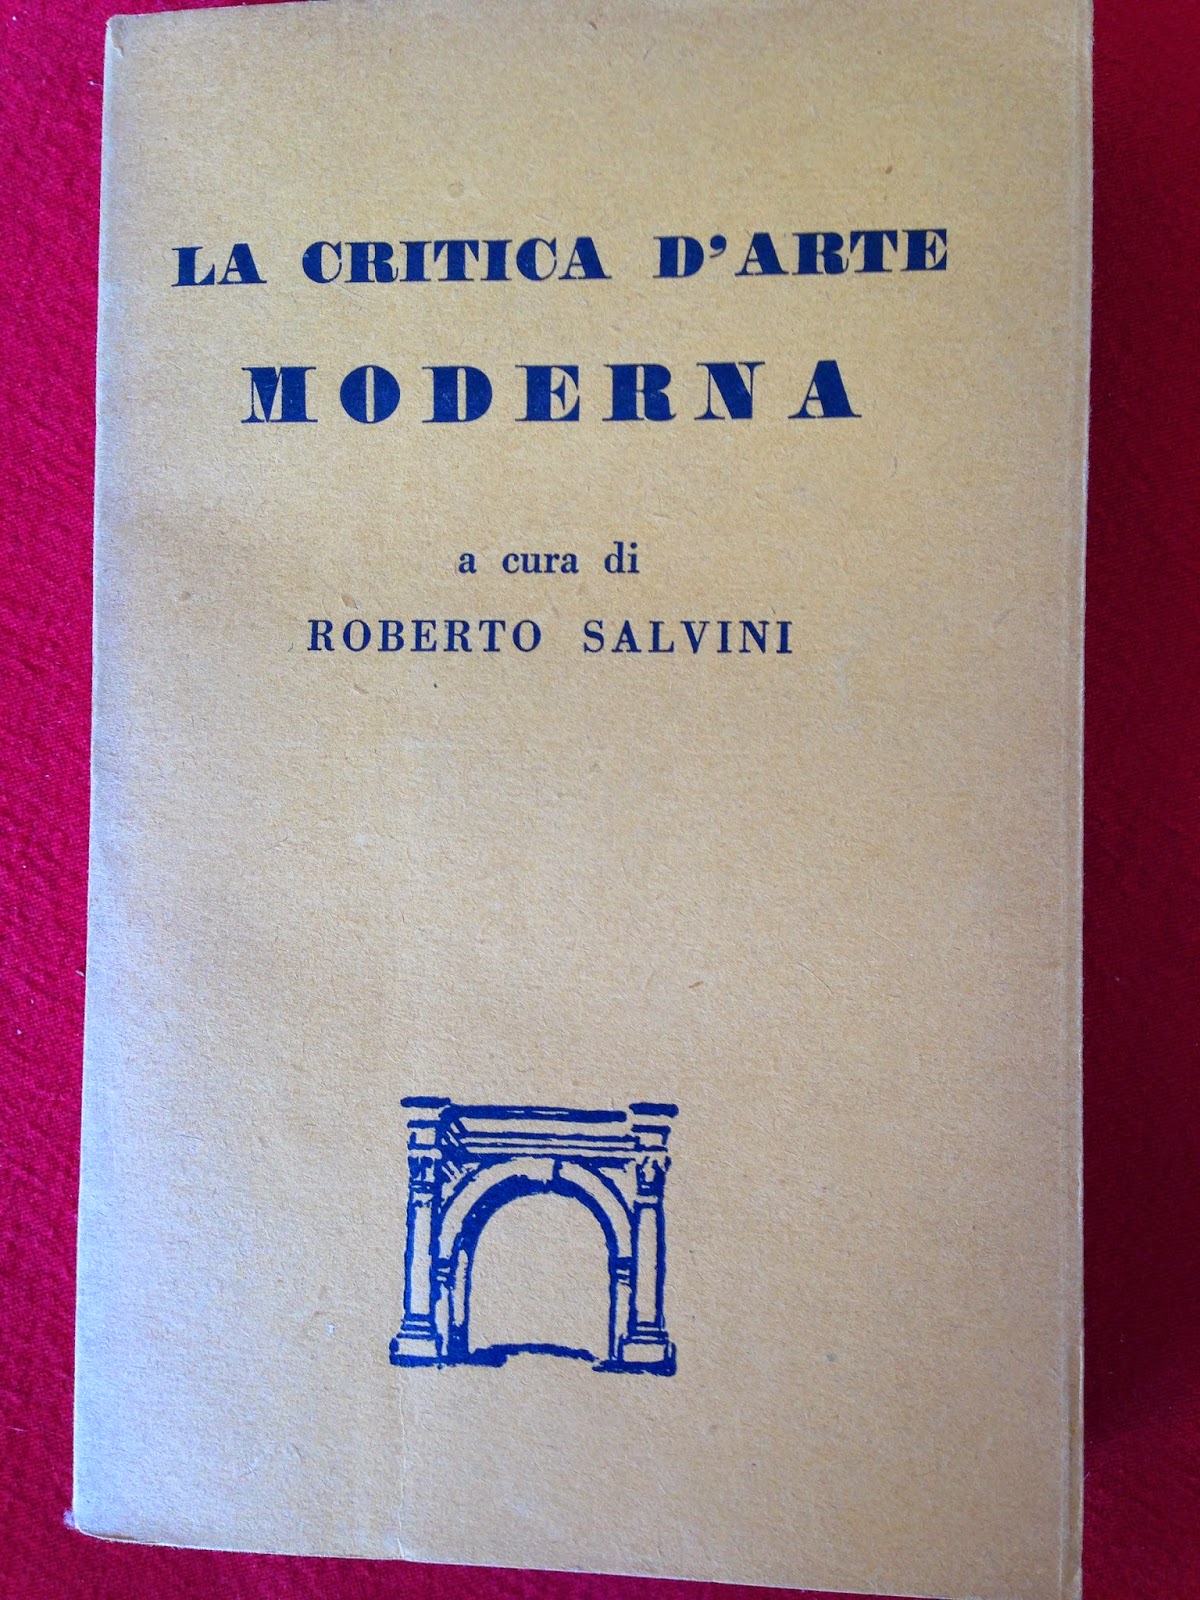 Guida all'arte moderna Come nuovo 100 tavole fuori testo Roberto Salvini 